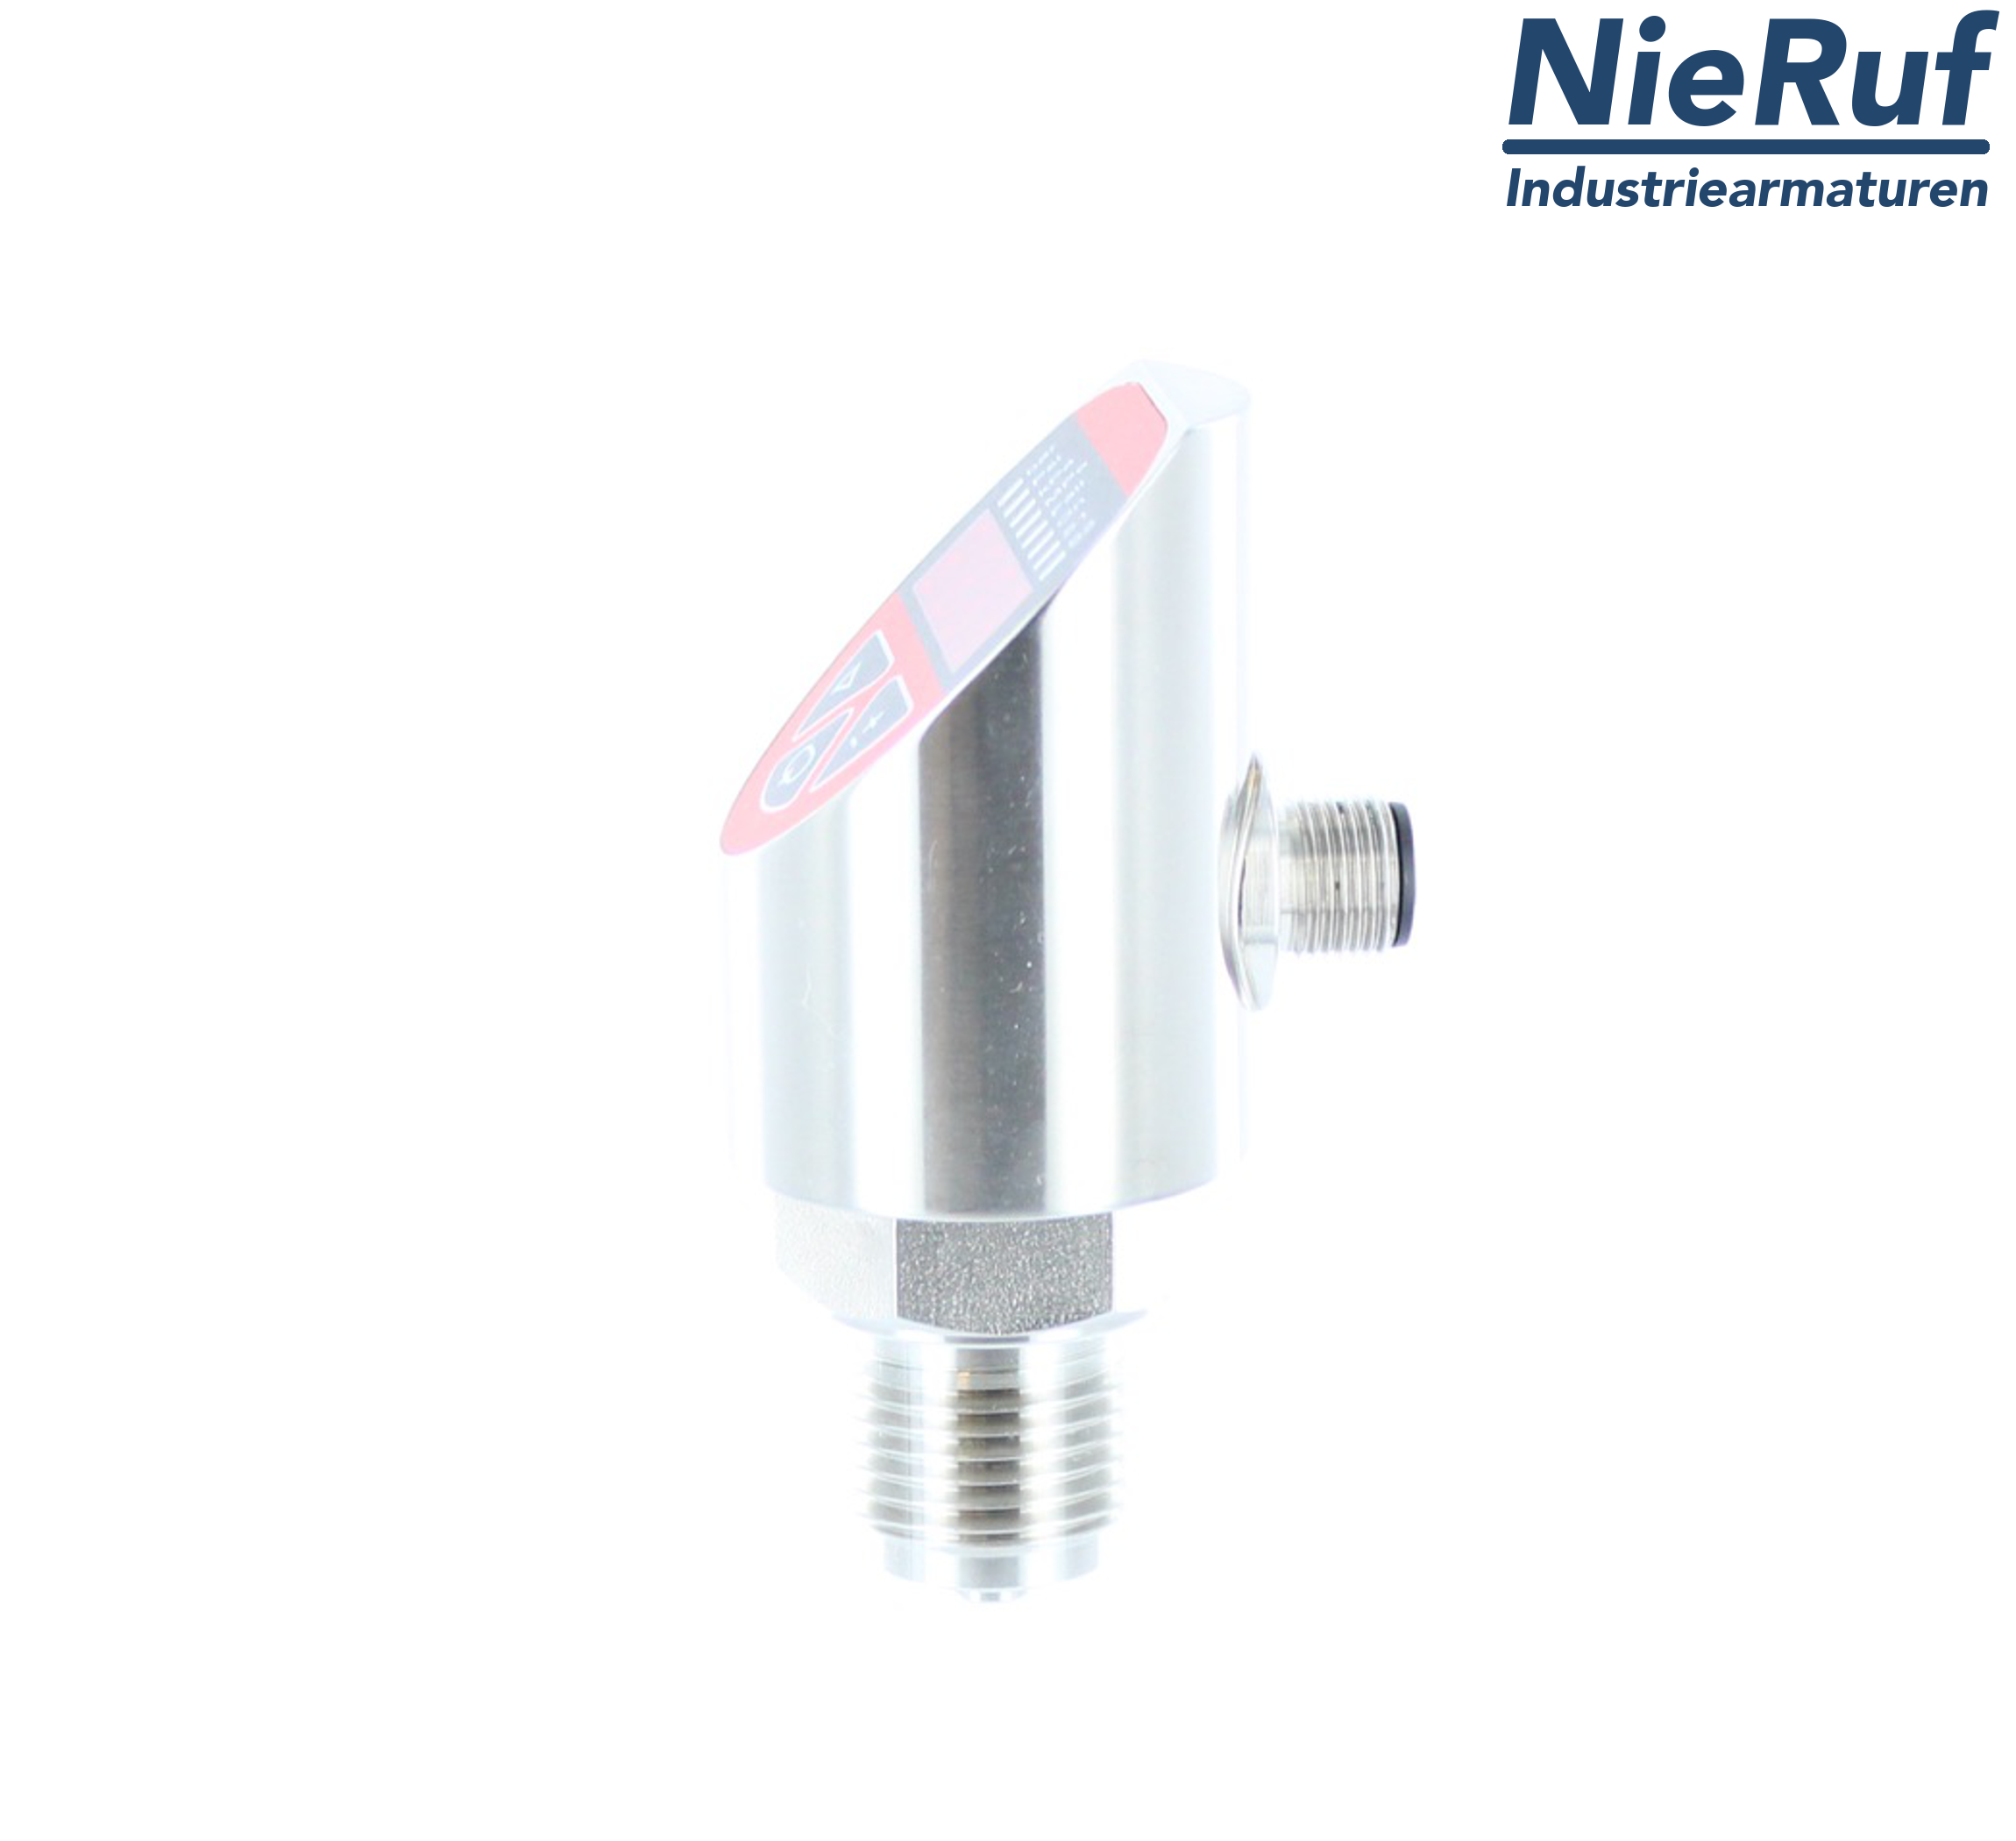 sensore di pressione digitale G 1/2" B IB  5-fili: 2xPNP, 1x4 - 20mA FPM 0,0 - 10,0 bar